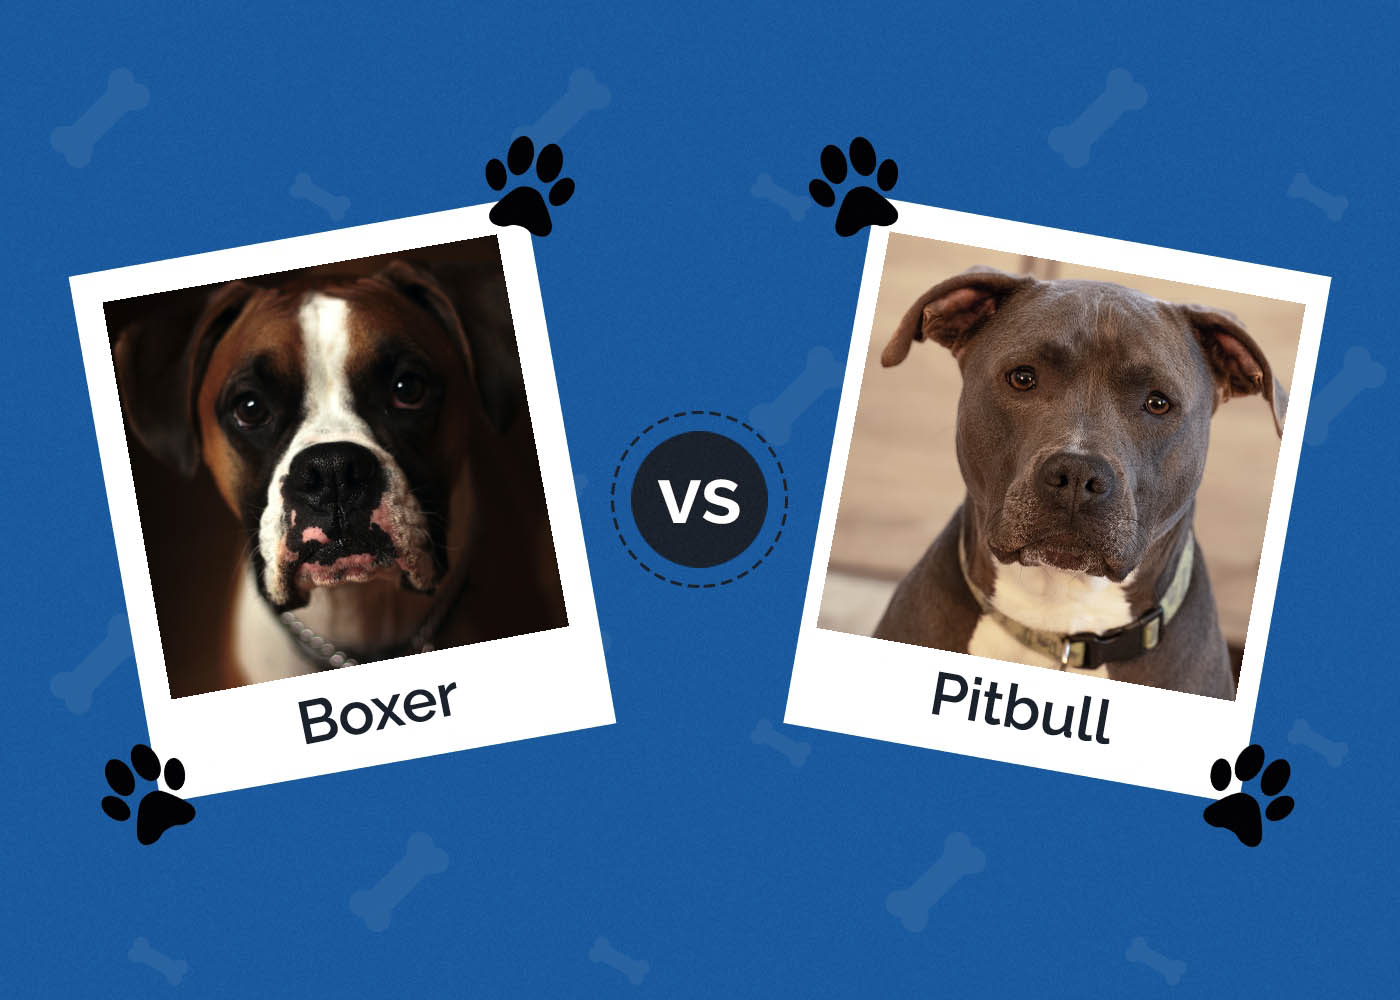 Boxer vs Pitbull